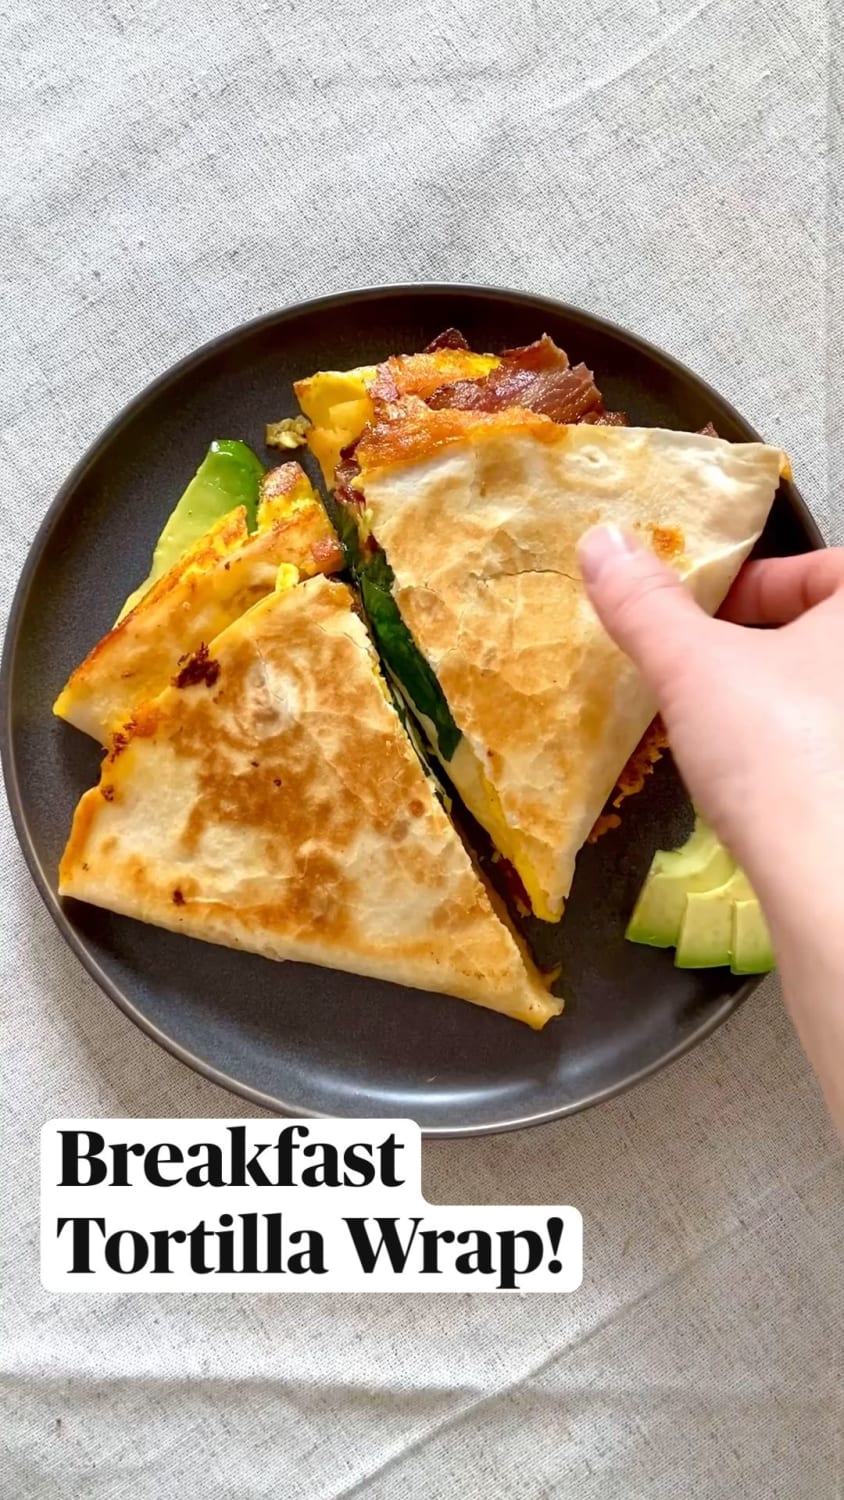 Breakfast Tortilla Wrap!: An immersive guide by Modern Farmhouse Eats